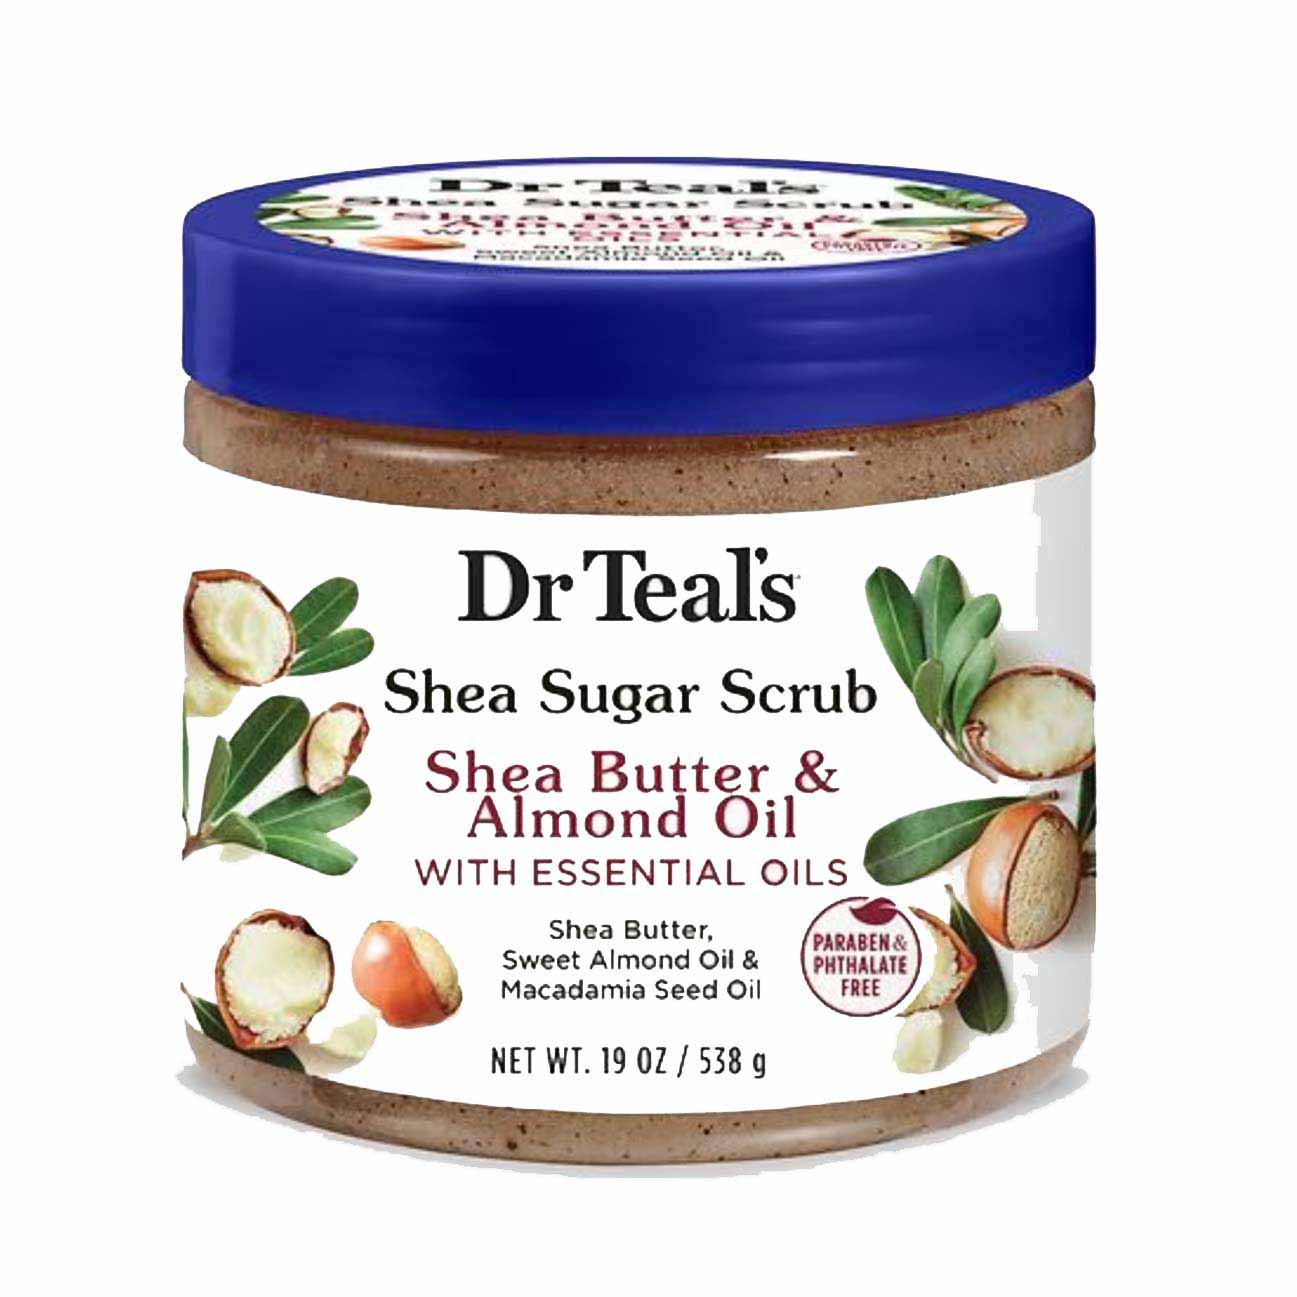 Dr. Teal’s Shea Sugar Scrub Shea Butter & Almond in a tub